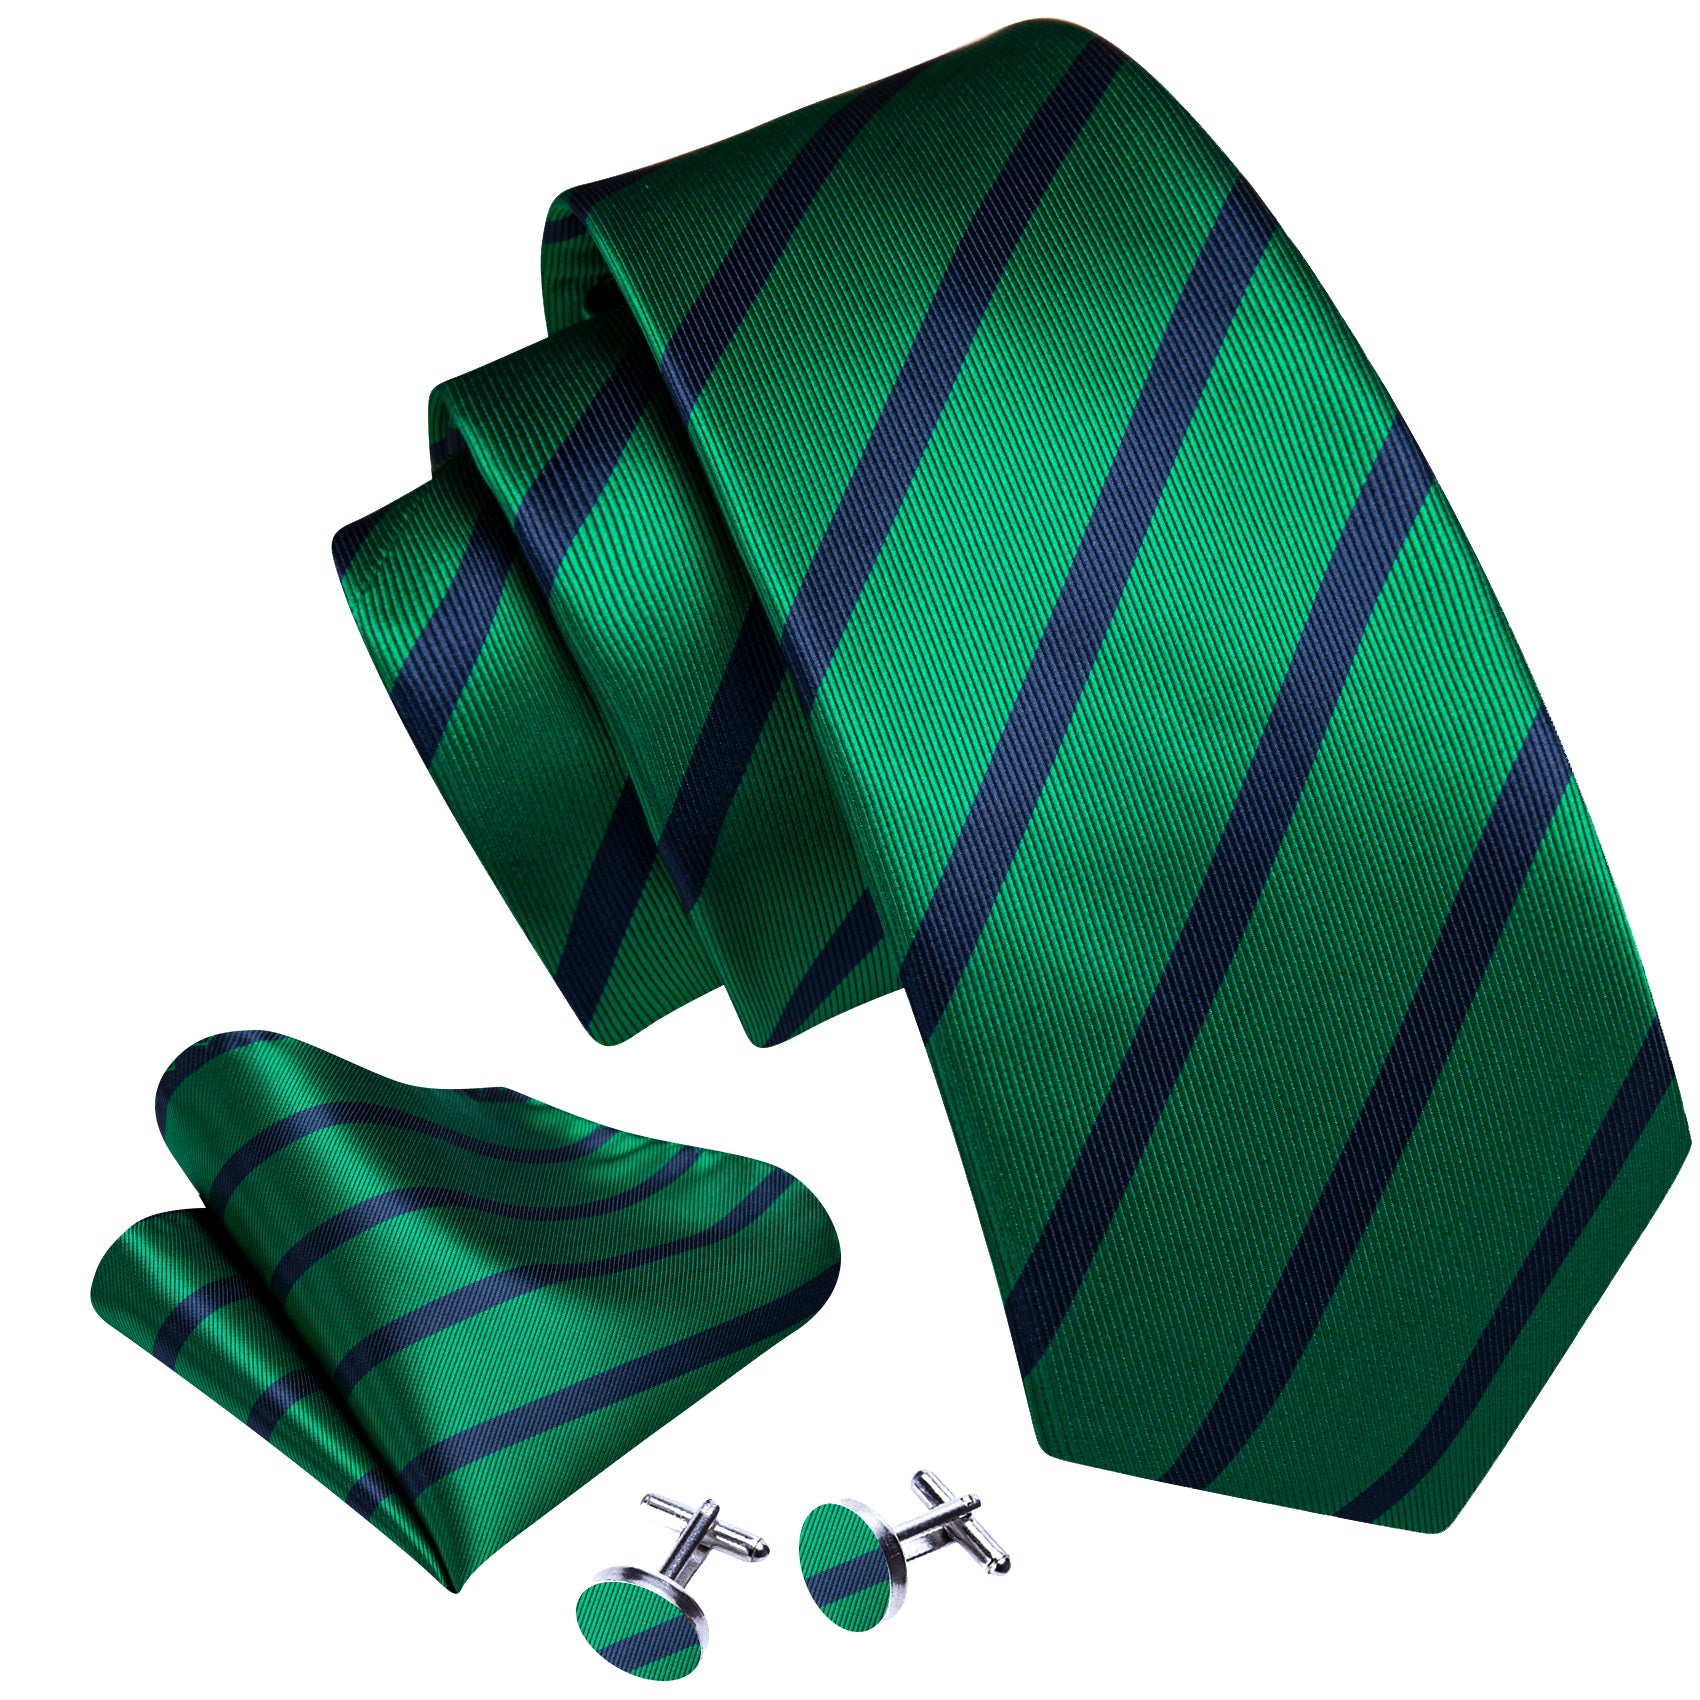 Striped necktie 